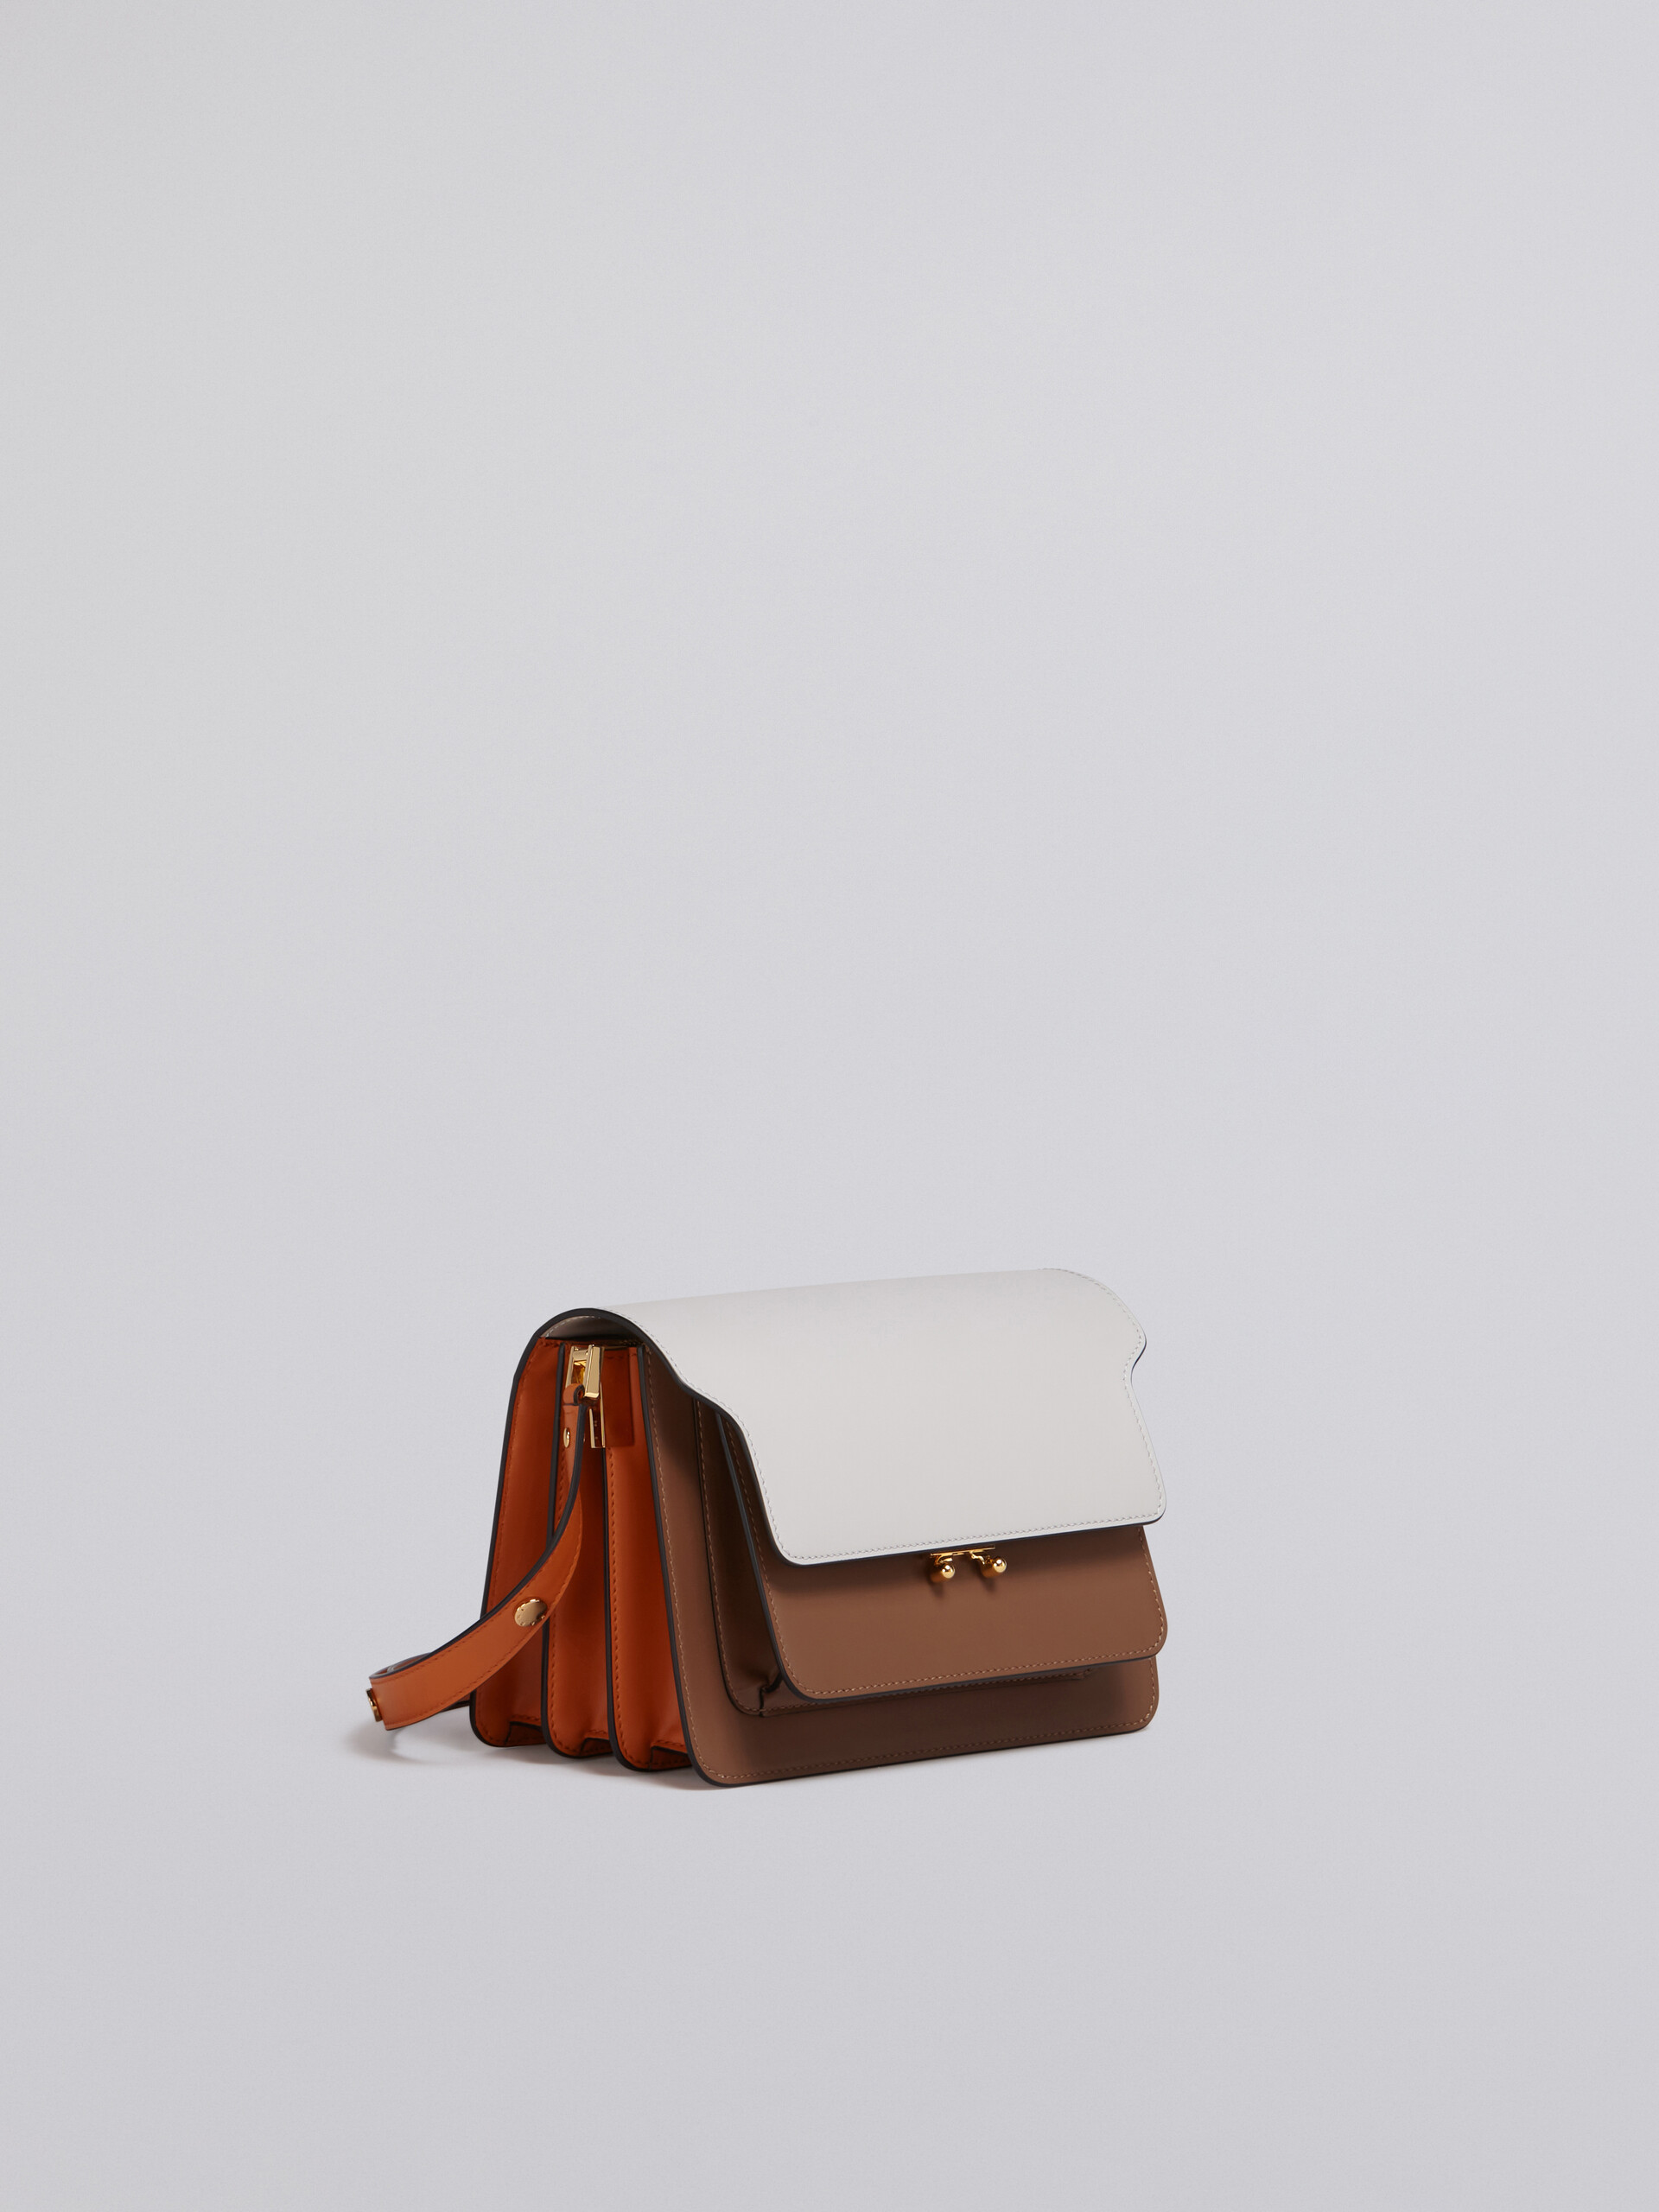 TRUNK medium bag in grey brown and orange leather - Shoulder Bag - Image 5